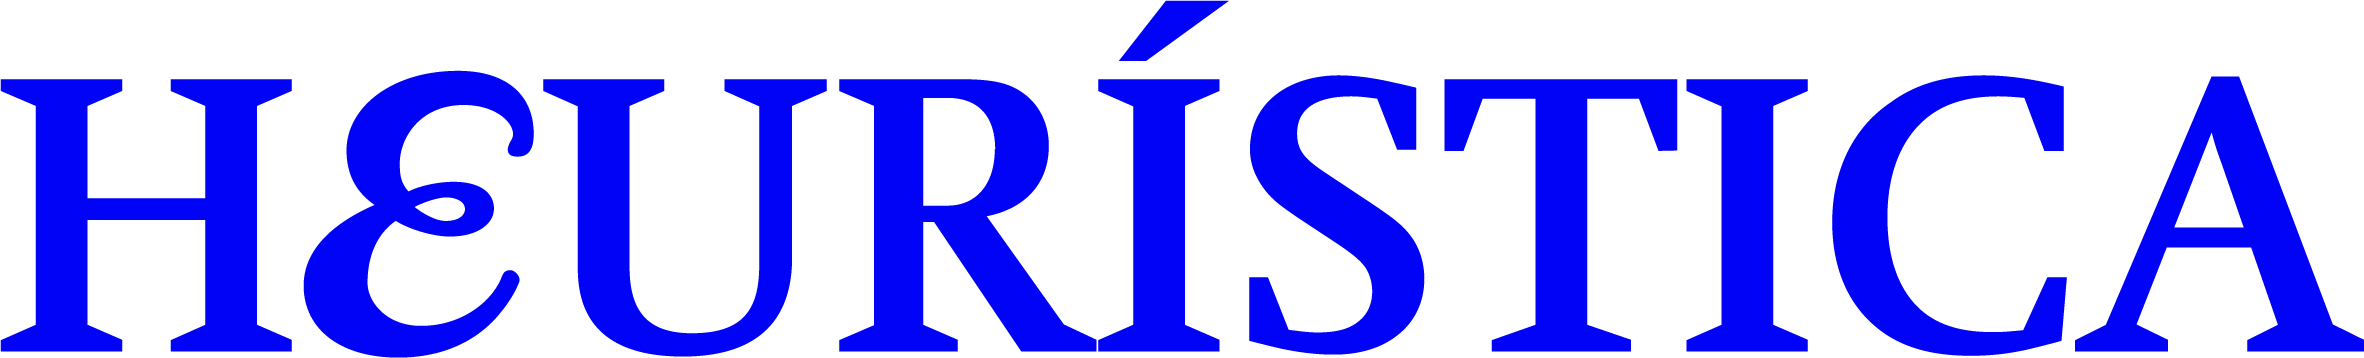 Heuristica_Logo_Azul_RGB